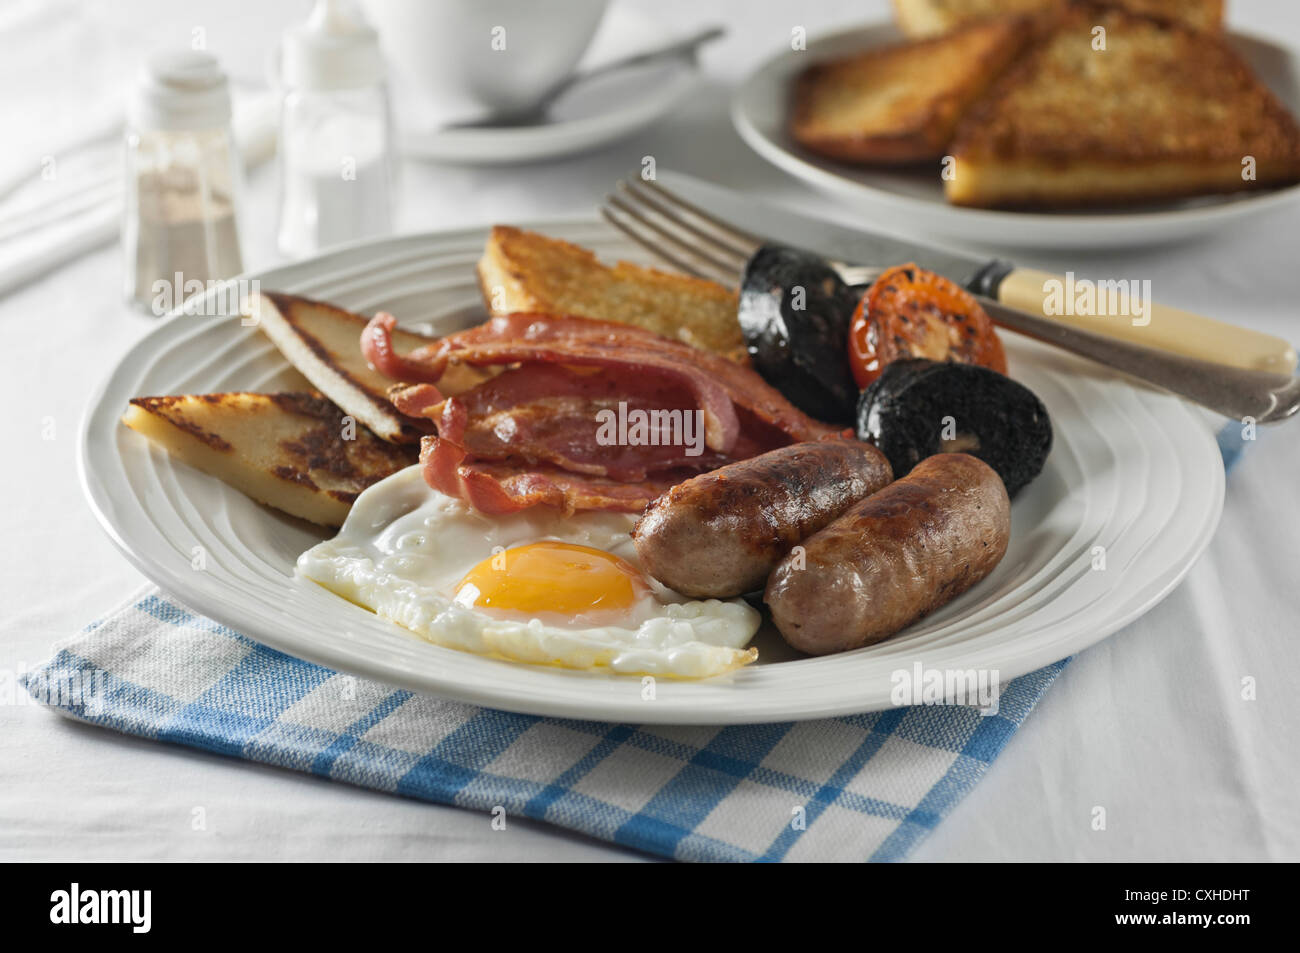 Petit-déjeuner irlandais de l'Ulster Fry Banque D'Images